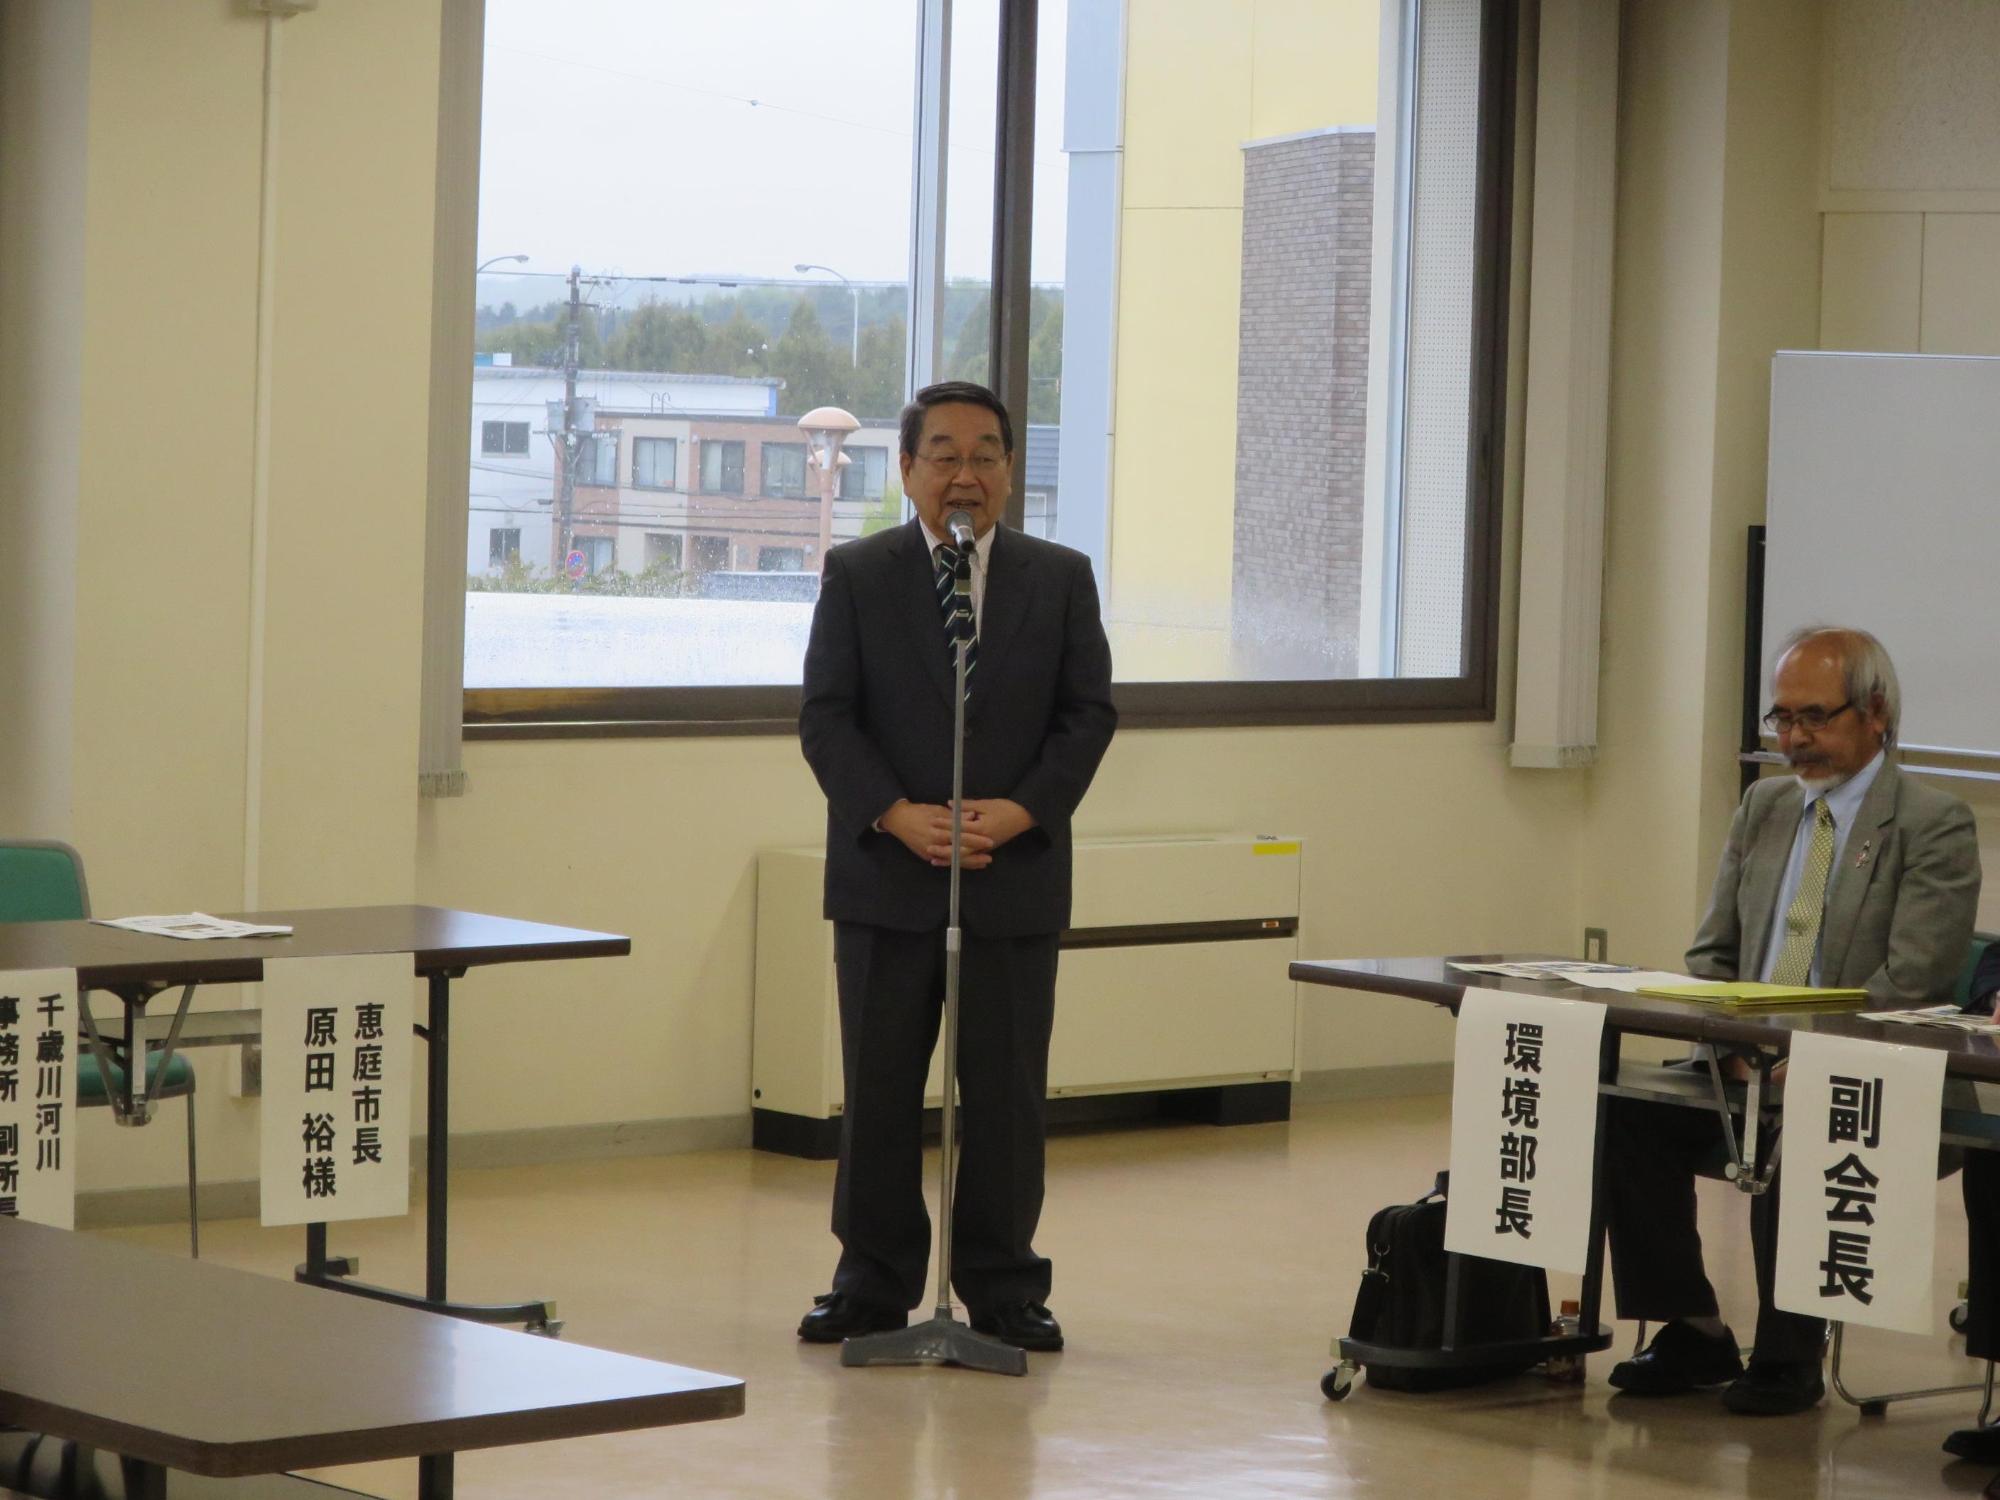 「恵庭河川愛護会総会」にて挨拶をしている原田市長の写真